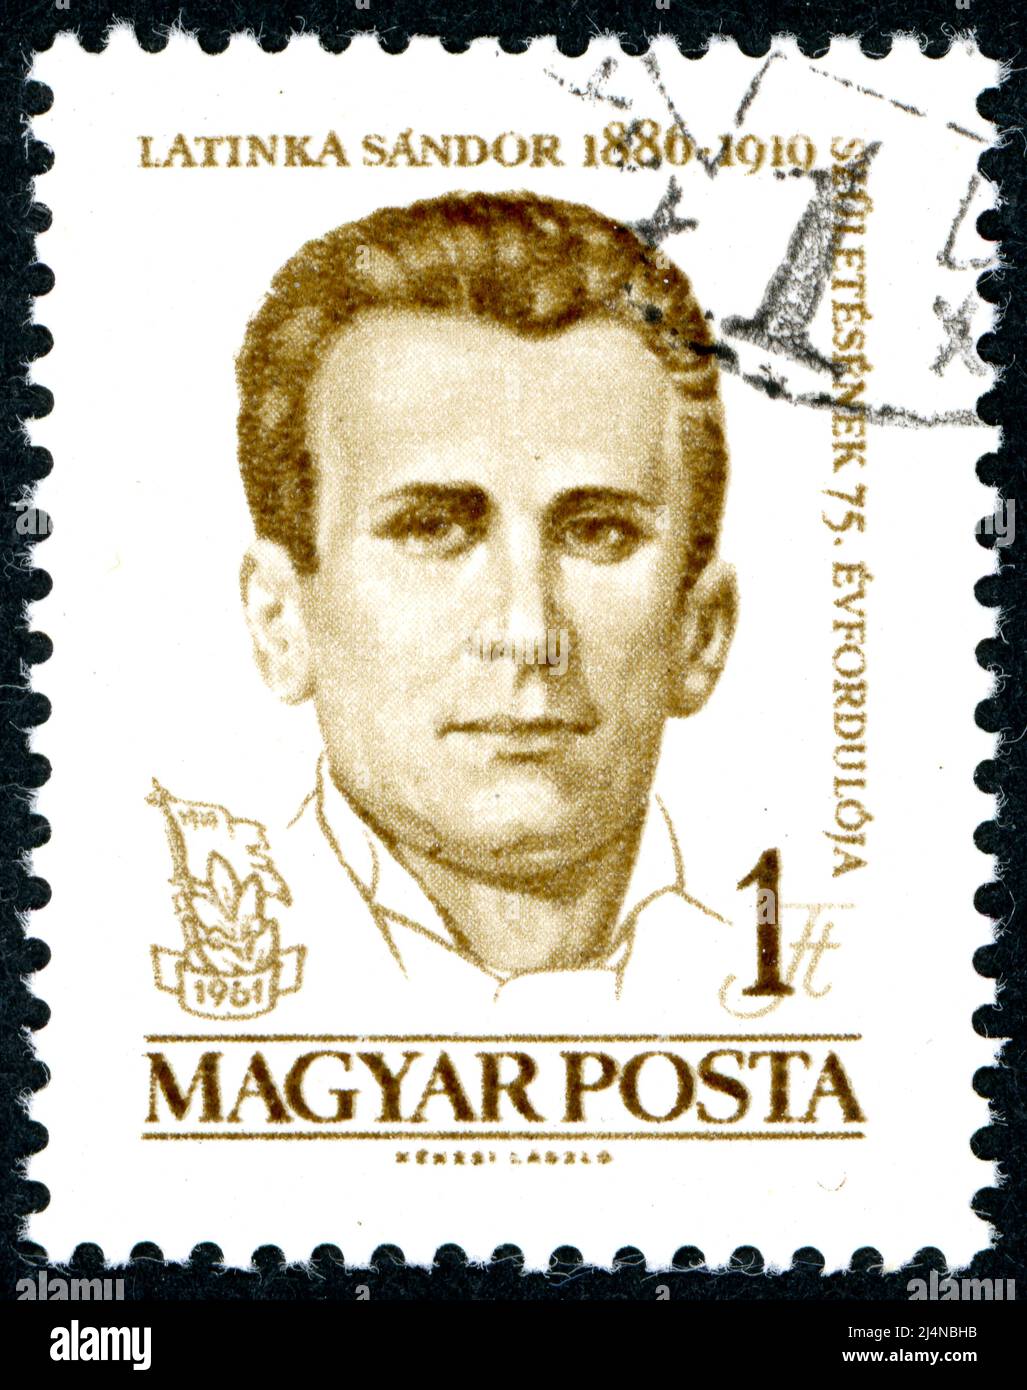 In Ungarn gedruckte Briefmarke mit einem Porträt einer Figur der ungarischen kommunistischen und Arbeiterbewegung - Latinka Sandor, um 1961 Stockfoto